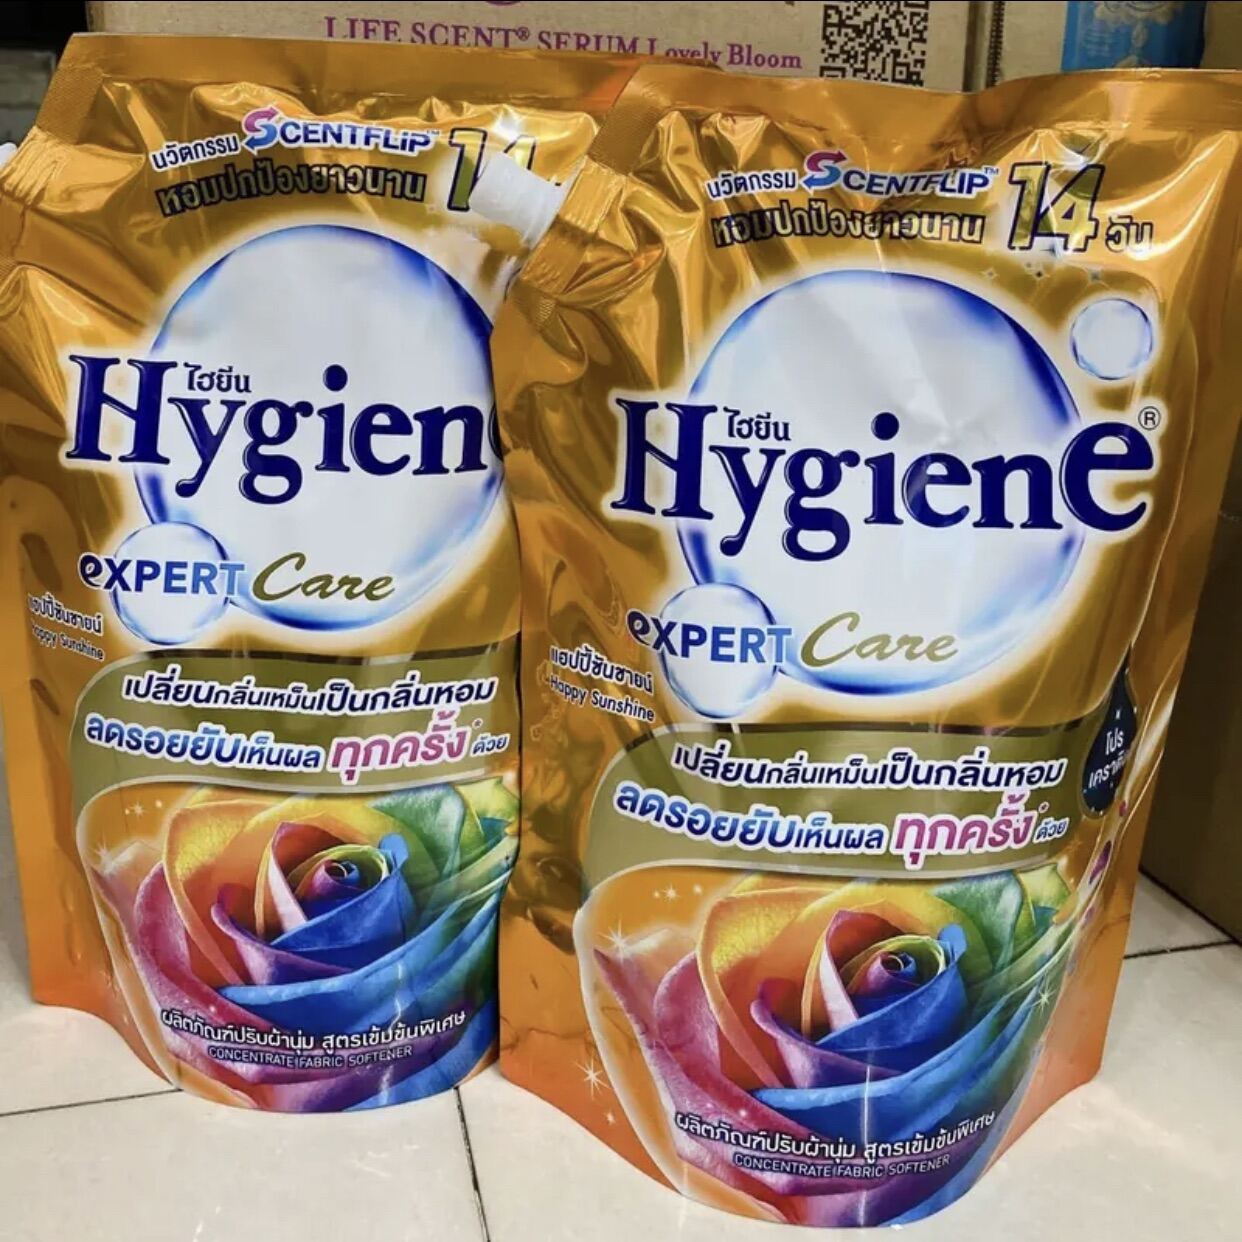 Combo 2 Nước xả vải thái lan Hygiene expert care